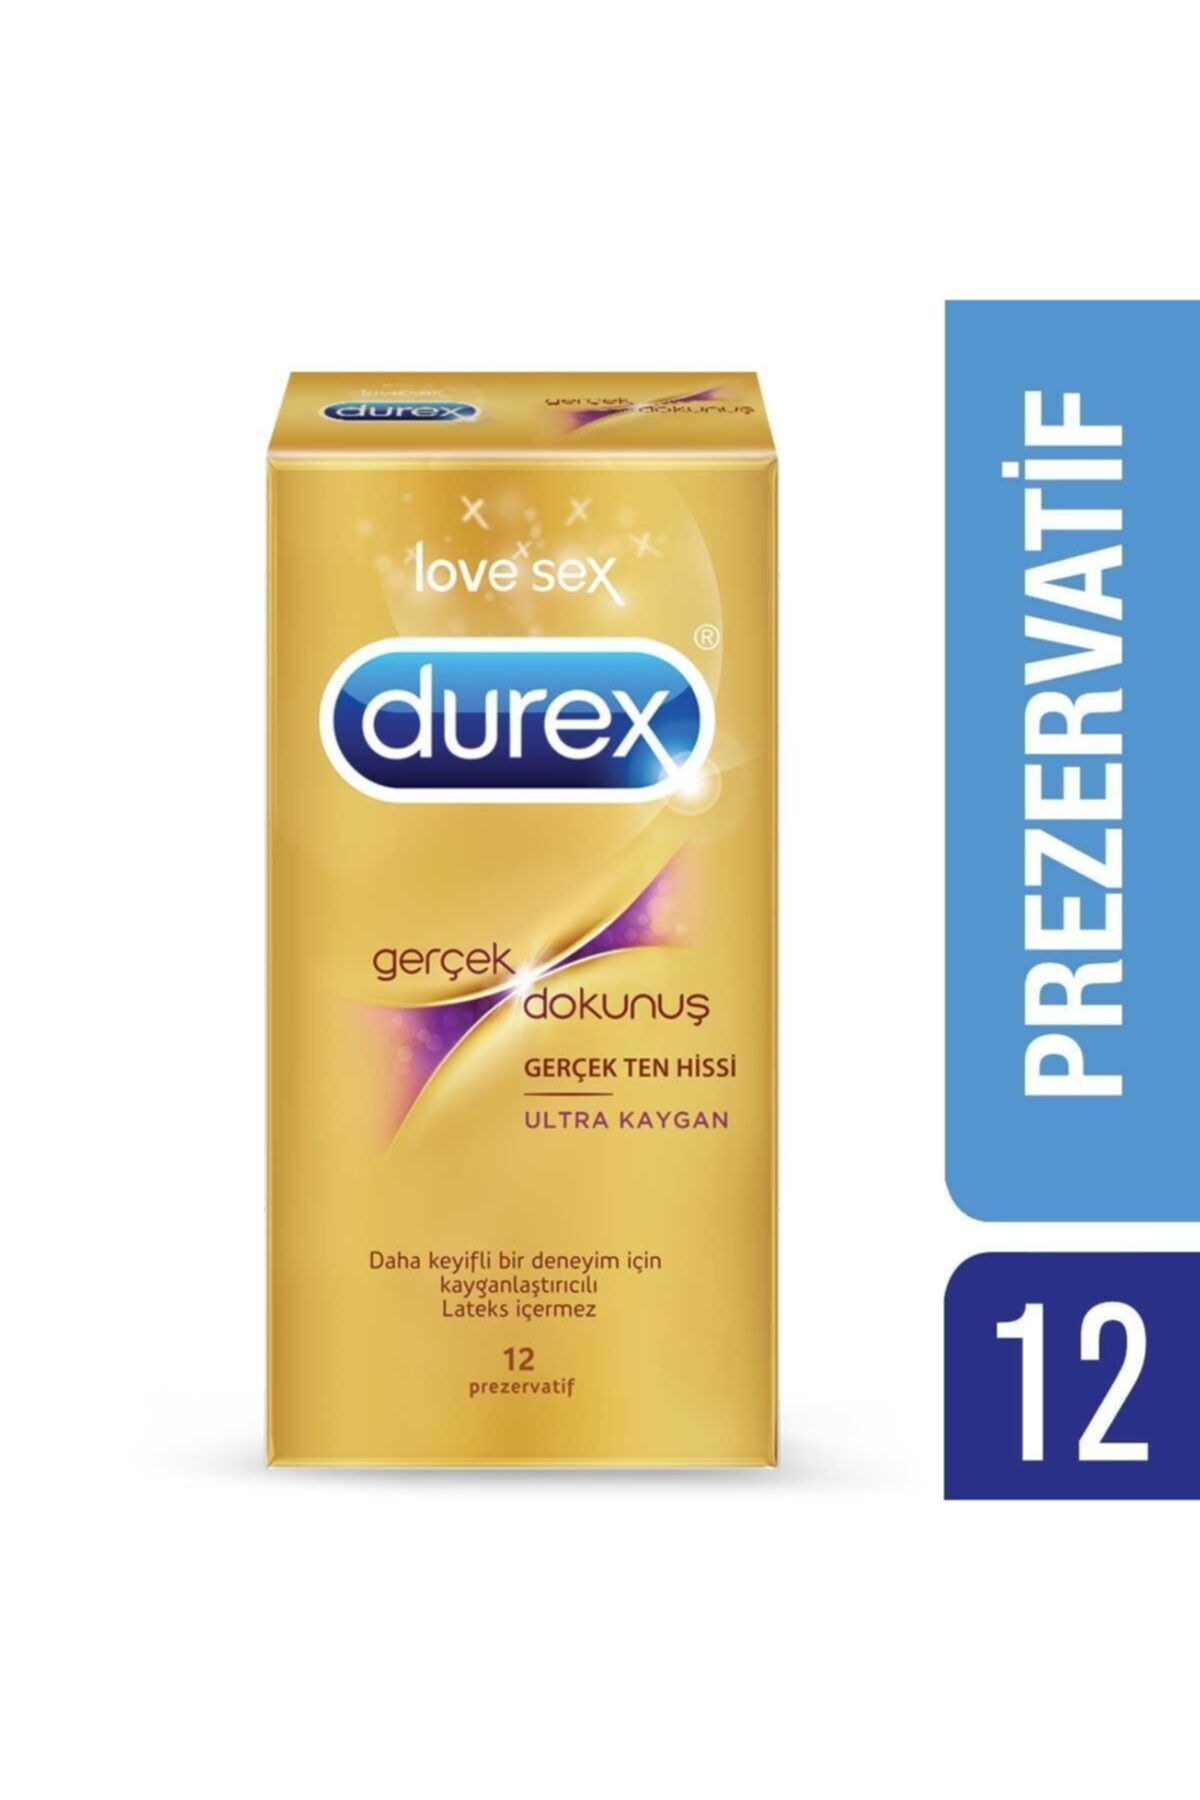 Durex Gerçek Dokunuş Ultra Kaygan Prezervatif 12'li